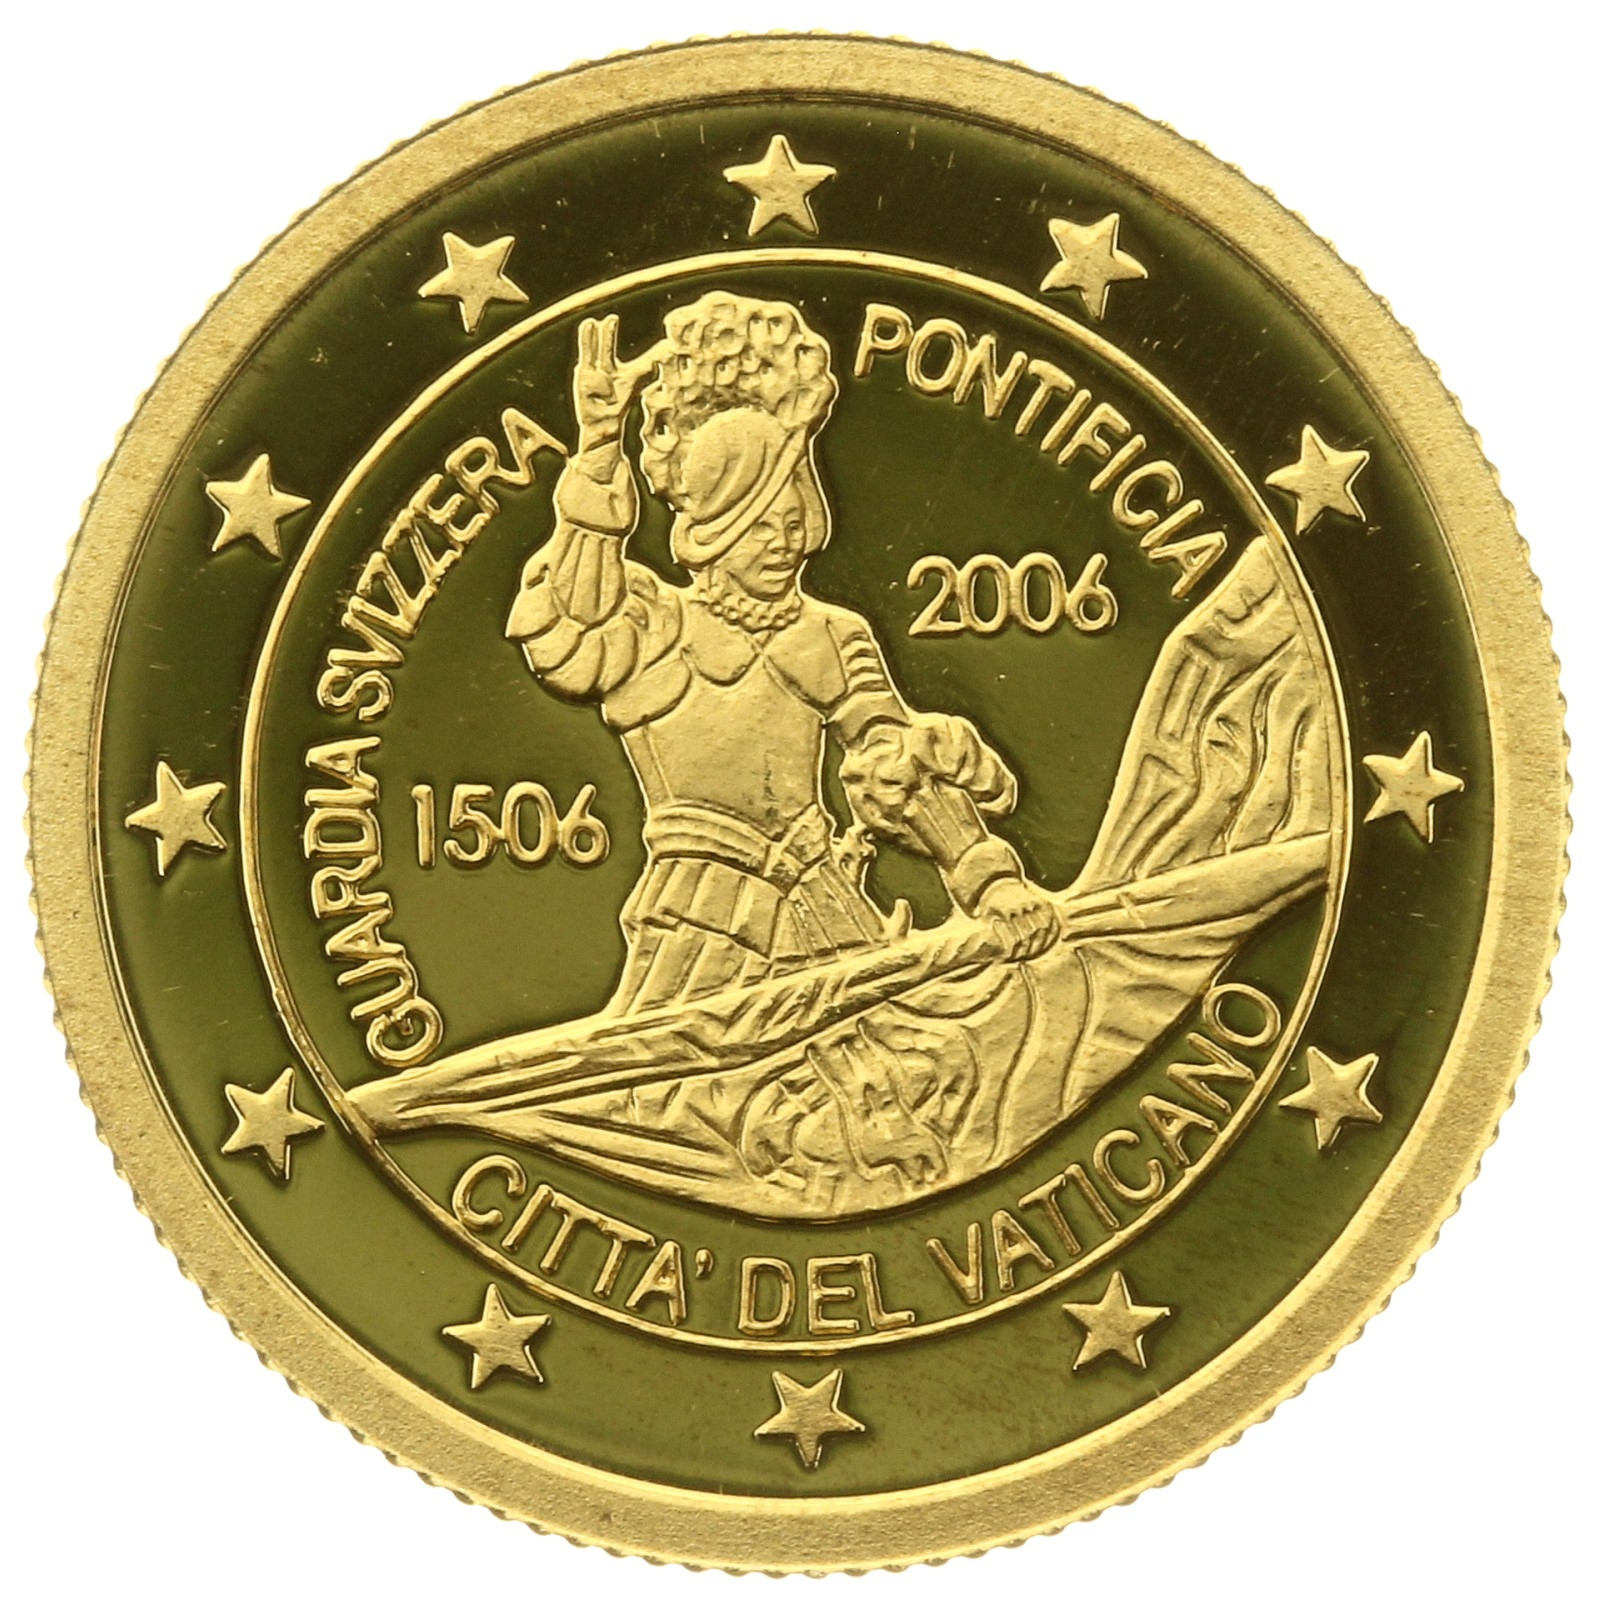 Liberia - 25 dollar - 2006 - Vatican - 1/25oz